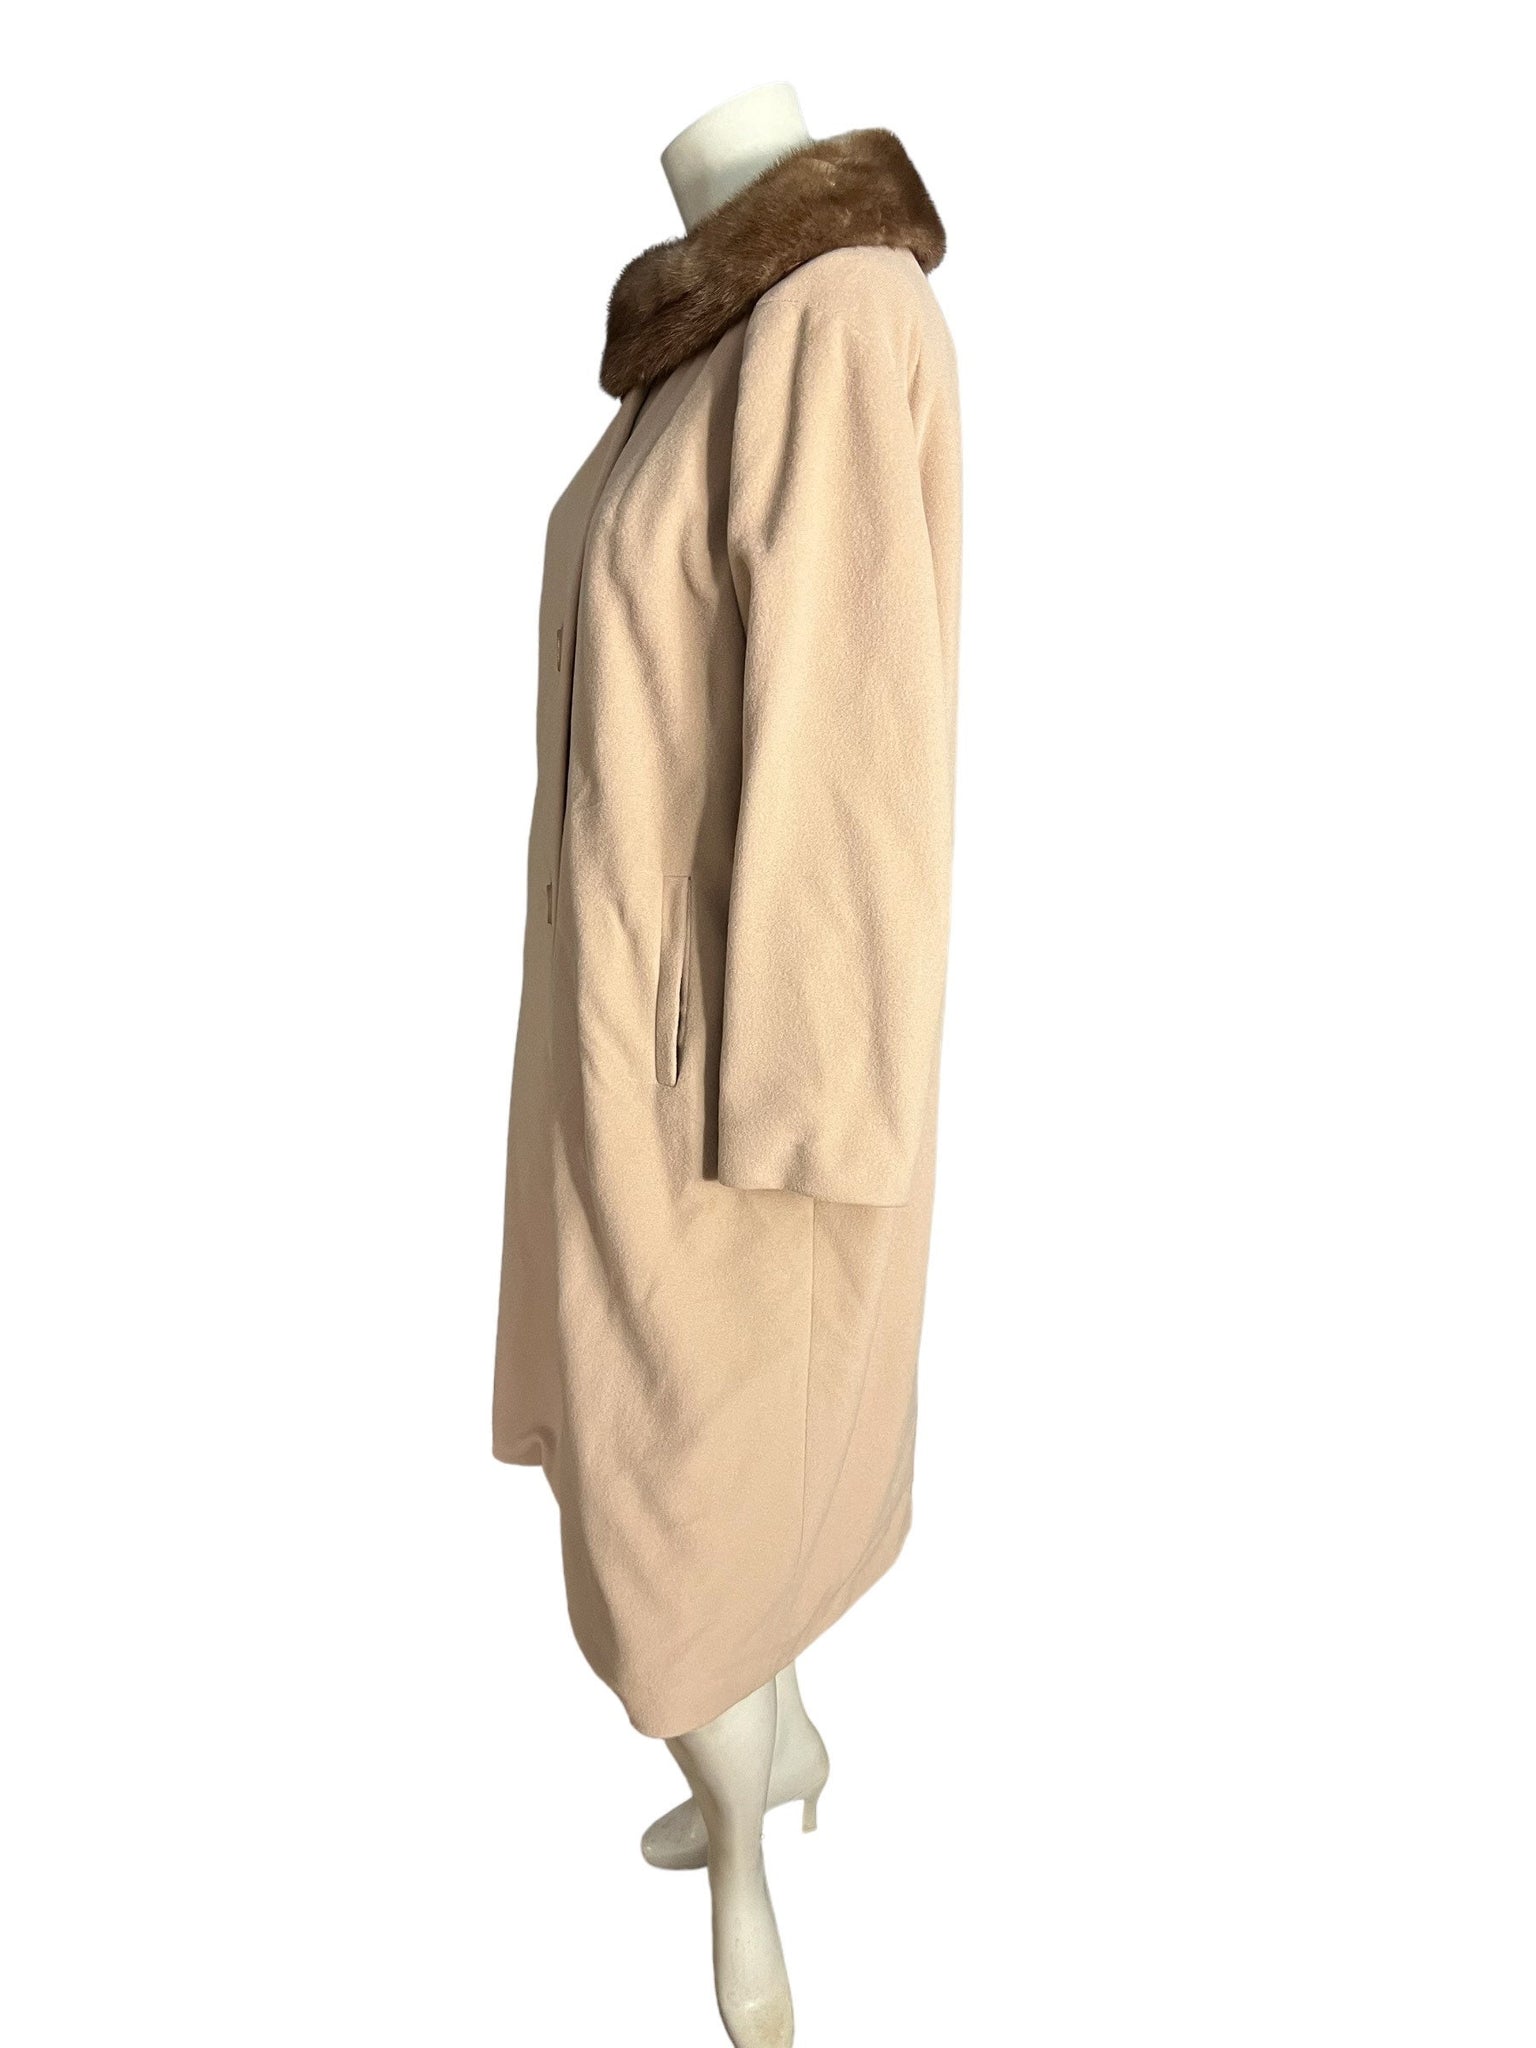 Vintage 50's women's coat tan Kashmiracle 40